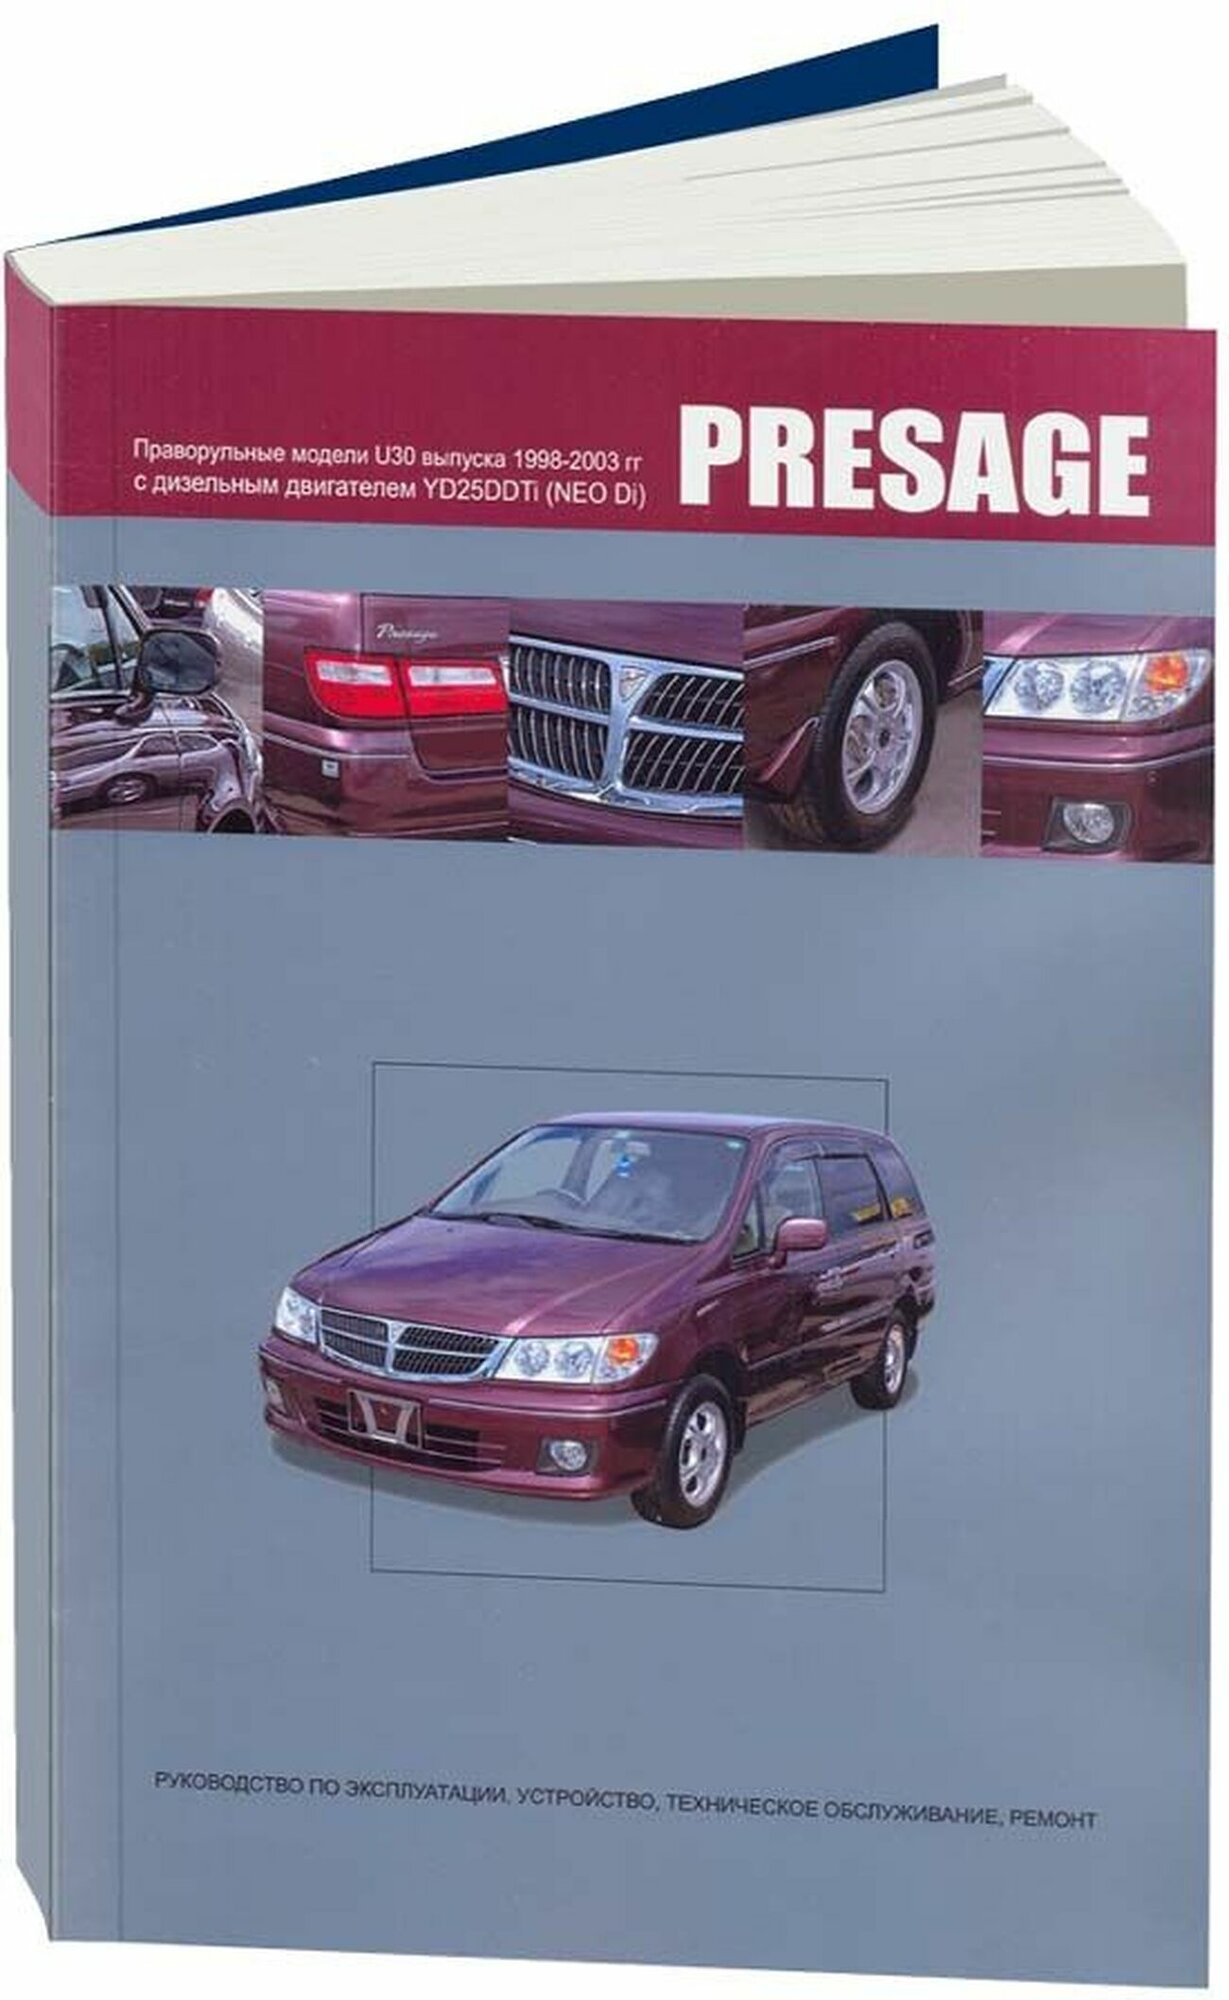 Автокнига: руководство / инструкция по ремонту и эксплуатации NISSAN PRESAGE (ниссан пресаж) праворульные модели (2WD и 4WD) с дизельным двигателем 1998-2003 годы выпуска , 978-5-98410-047-2, издательство Автонавигатор